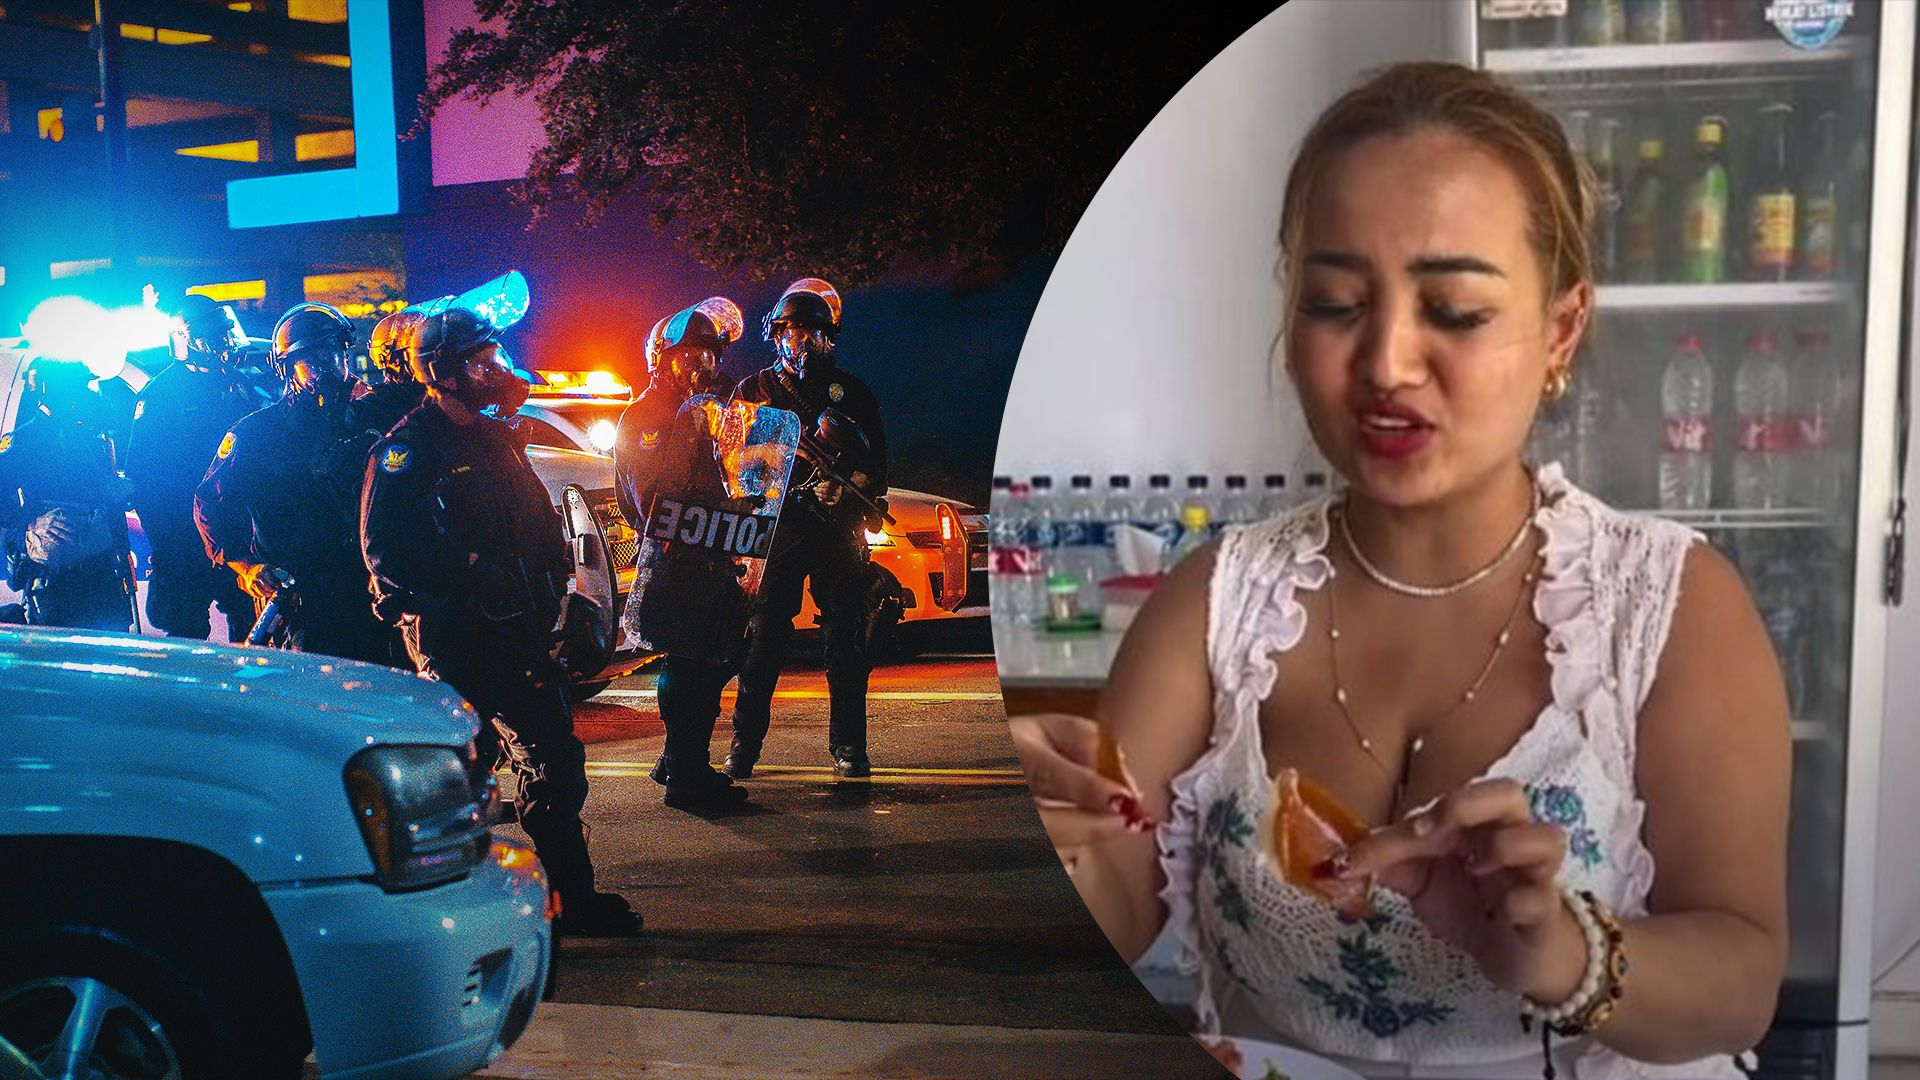 Жінка їла свинину на відео – її заарештували та оштрафували